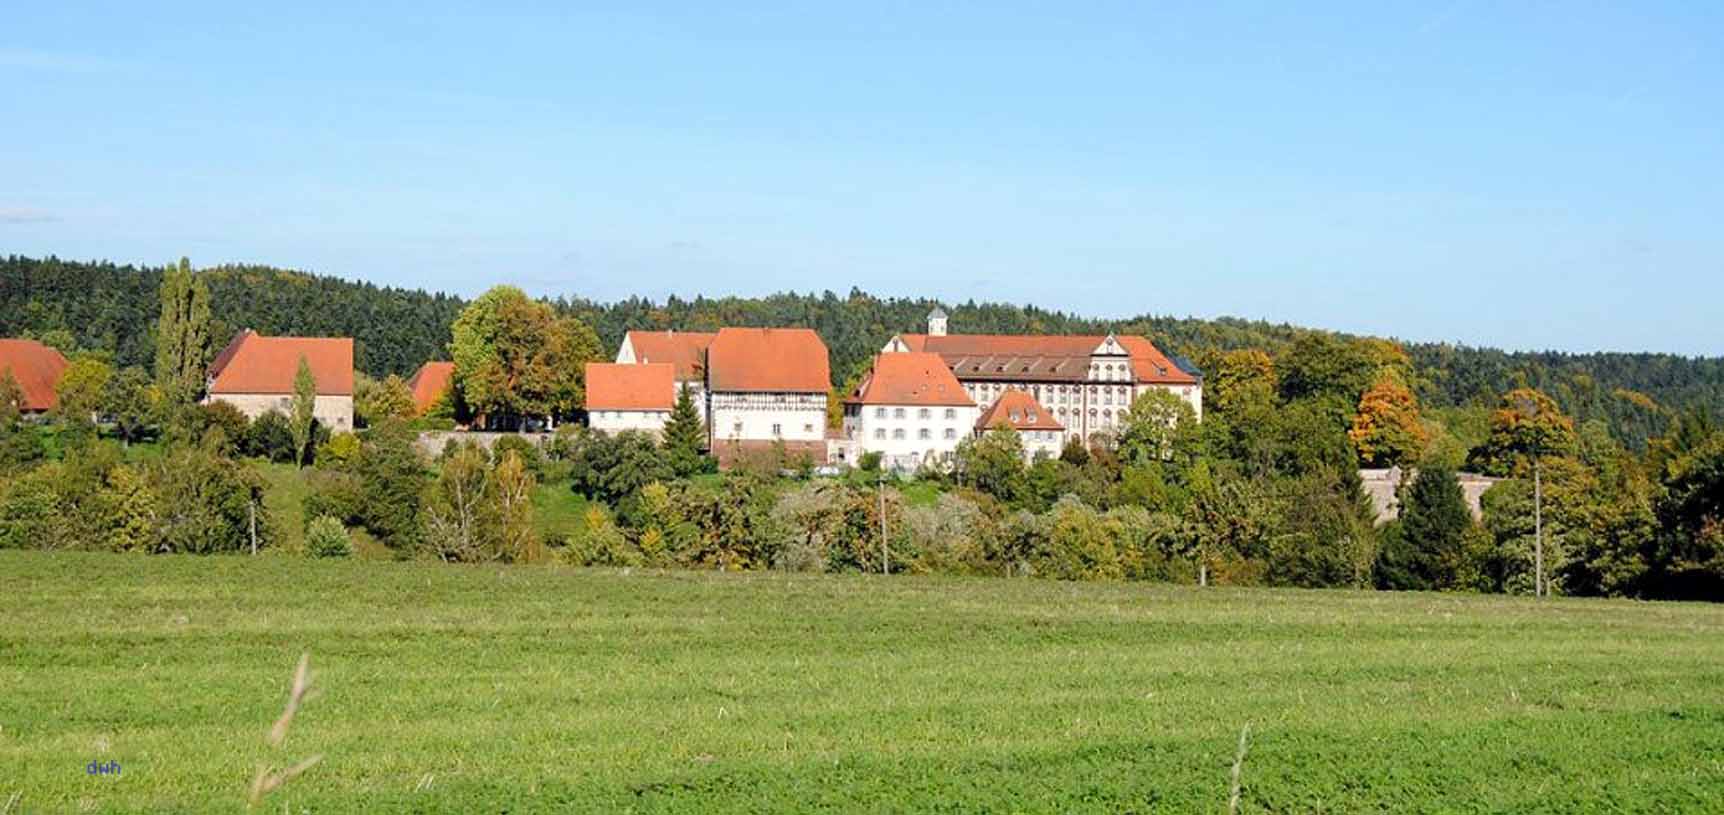 Kloster Kirchberg, Promo/Kloster Kirchberg